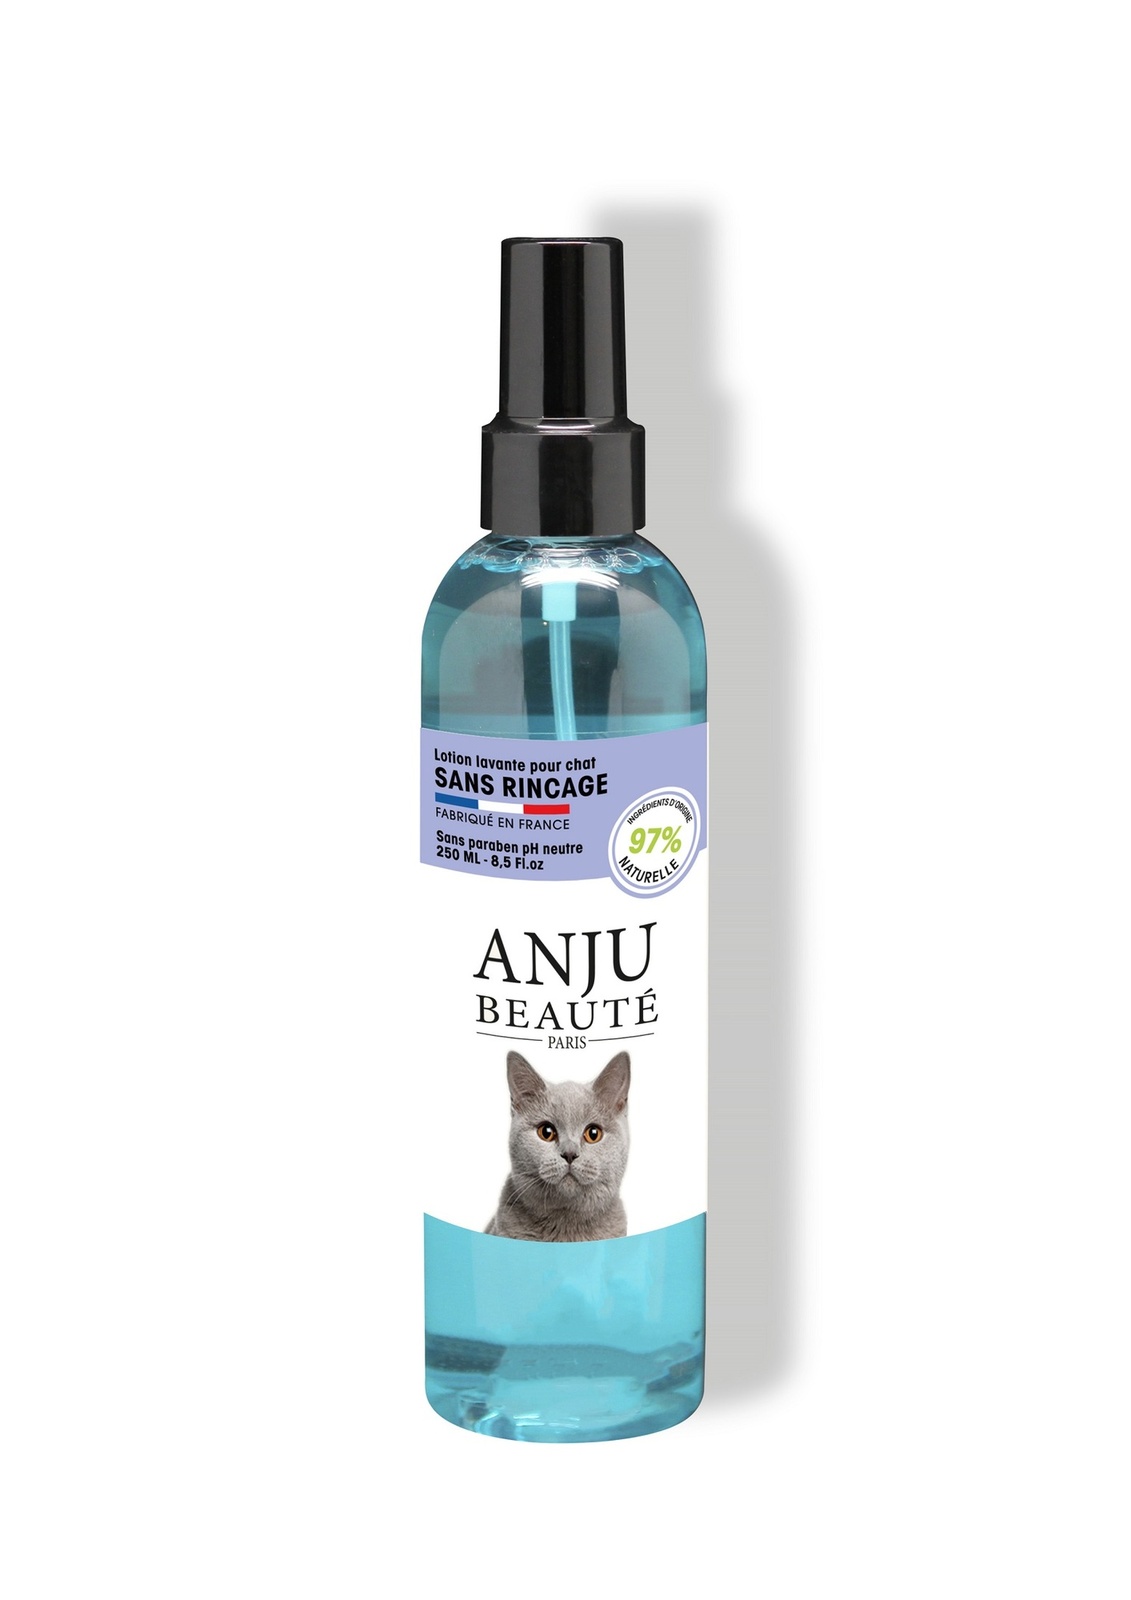 Anju Beaute Anju Beaute очищаяющий спрей для кошек без ополаскивания, 250 мл (250 г) anju beaute anju beaute спрей для собак для облегчения расчесывания 250 мл 250 г